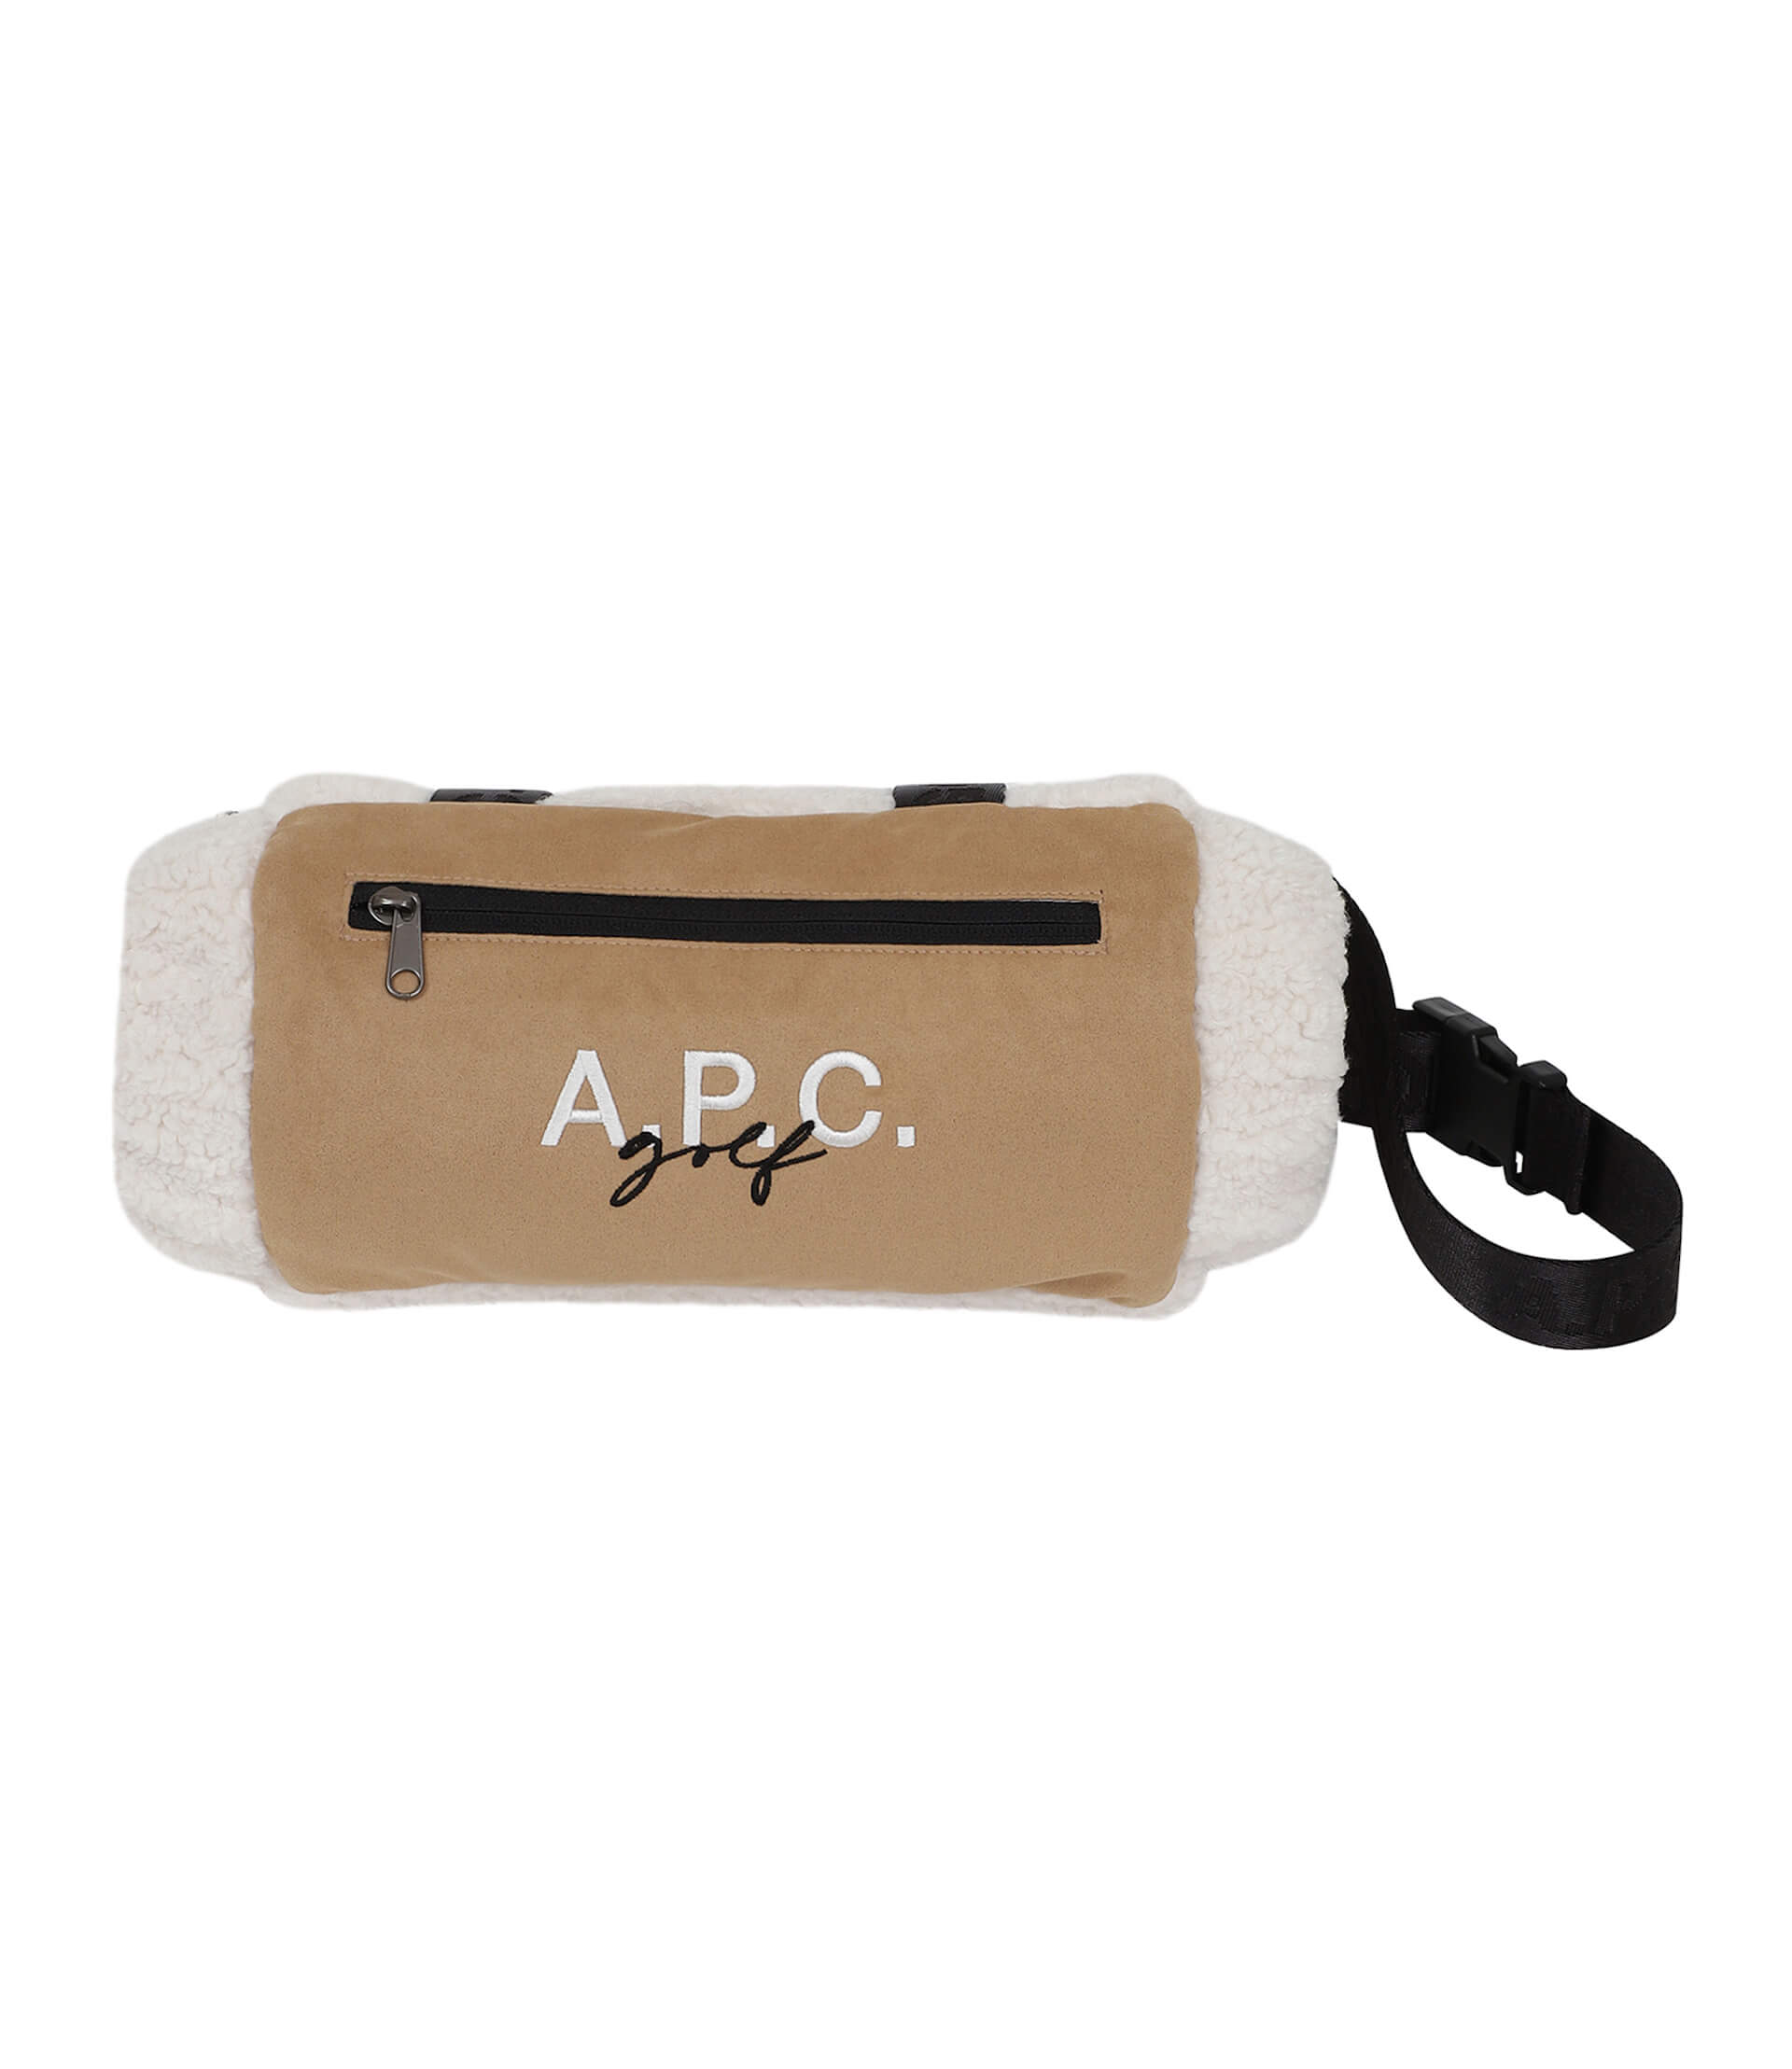 【A.P.C. GOLF】フィールドライフと日常も楽しめるダウンジャケットやベスト、アクセサリーが登場 fashion221202-apcjp-011